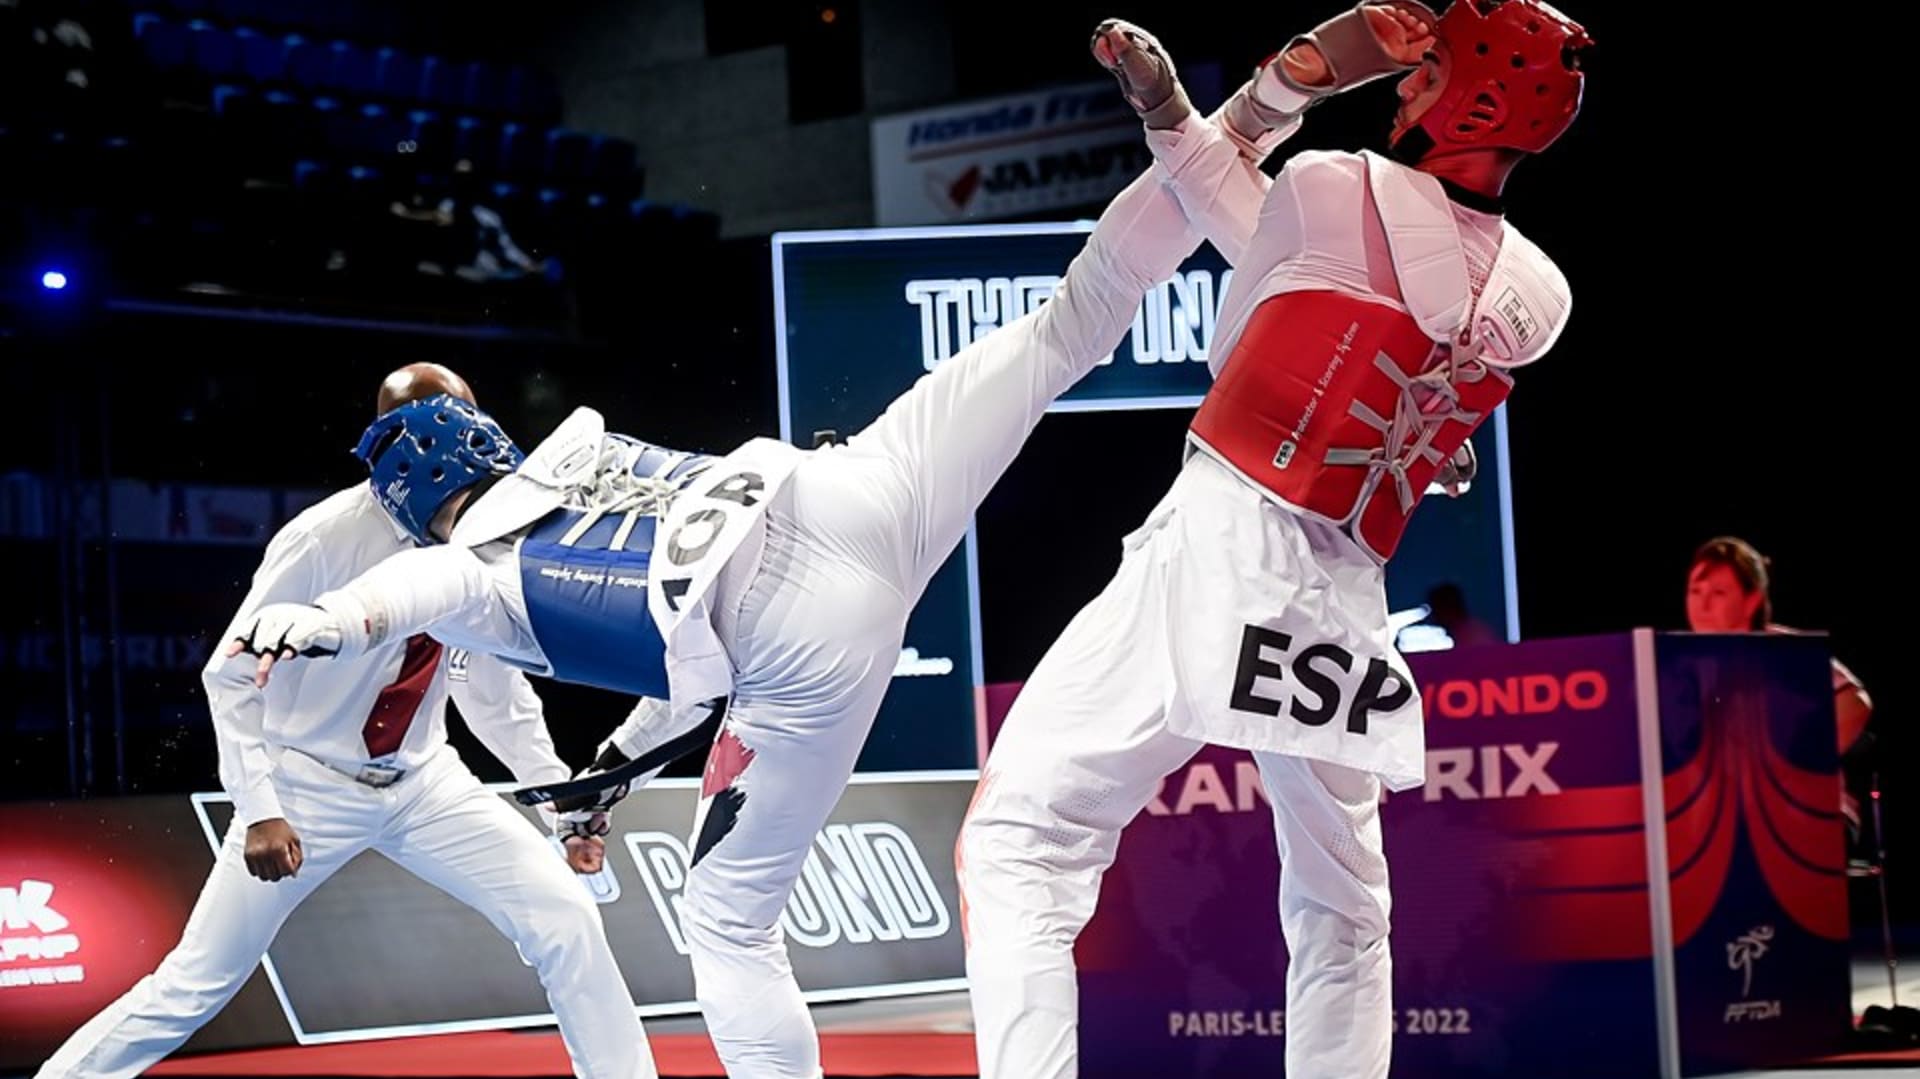 World Taekwondo COMPETITIONS